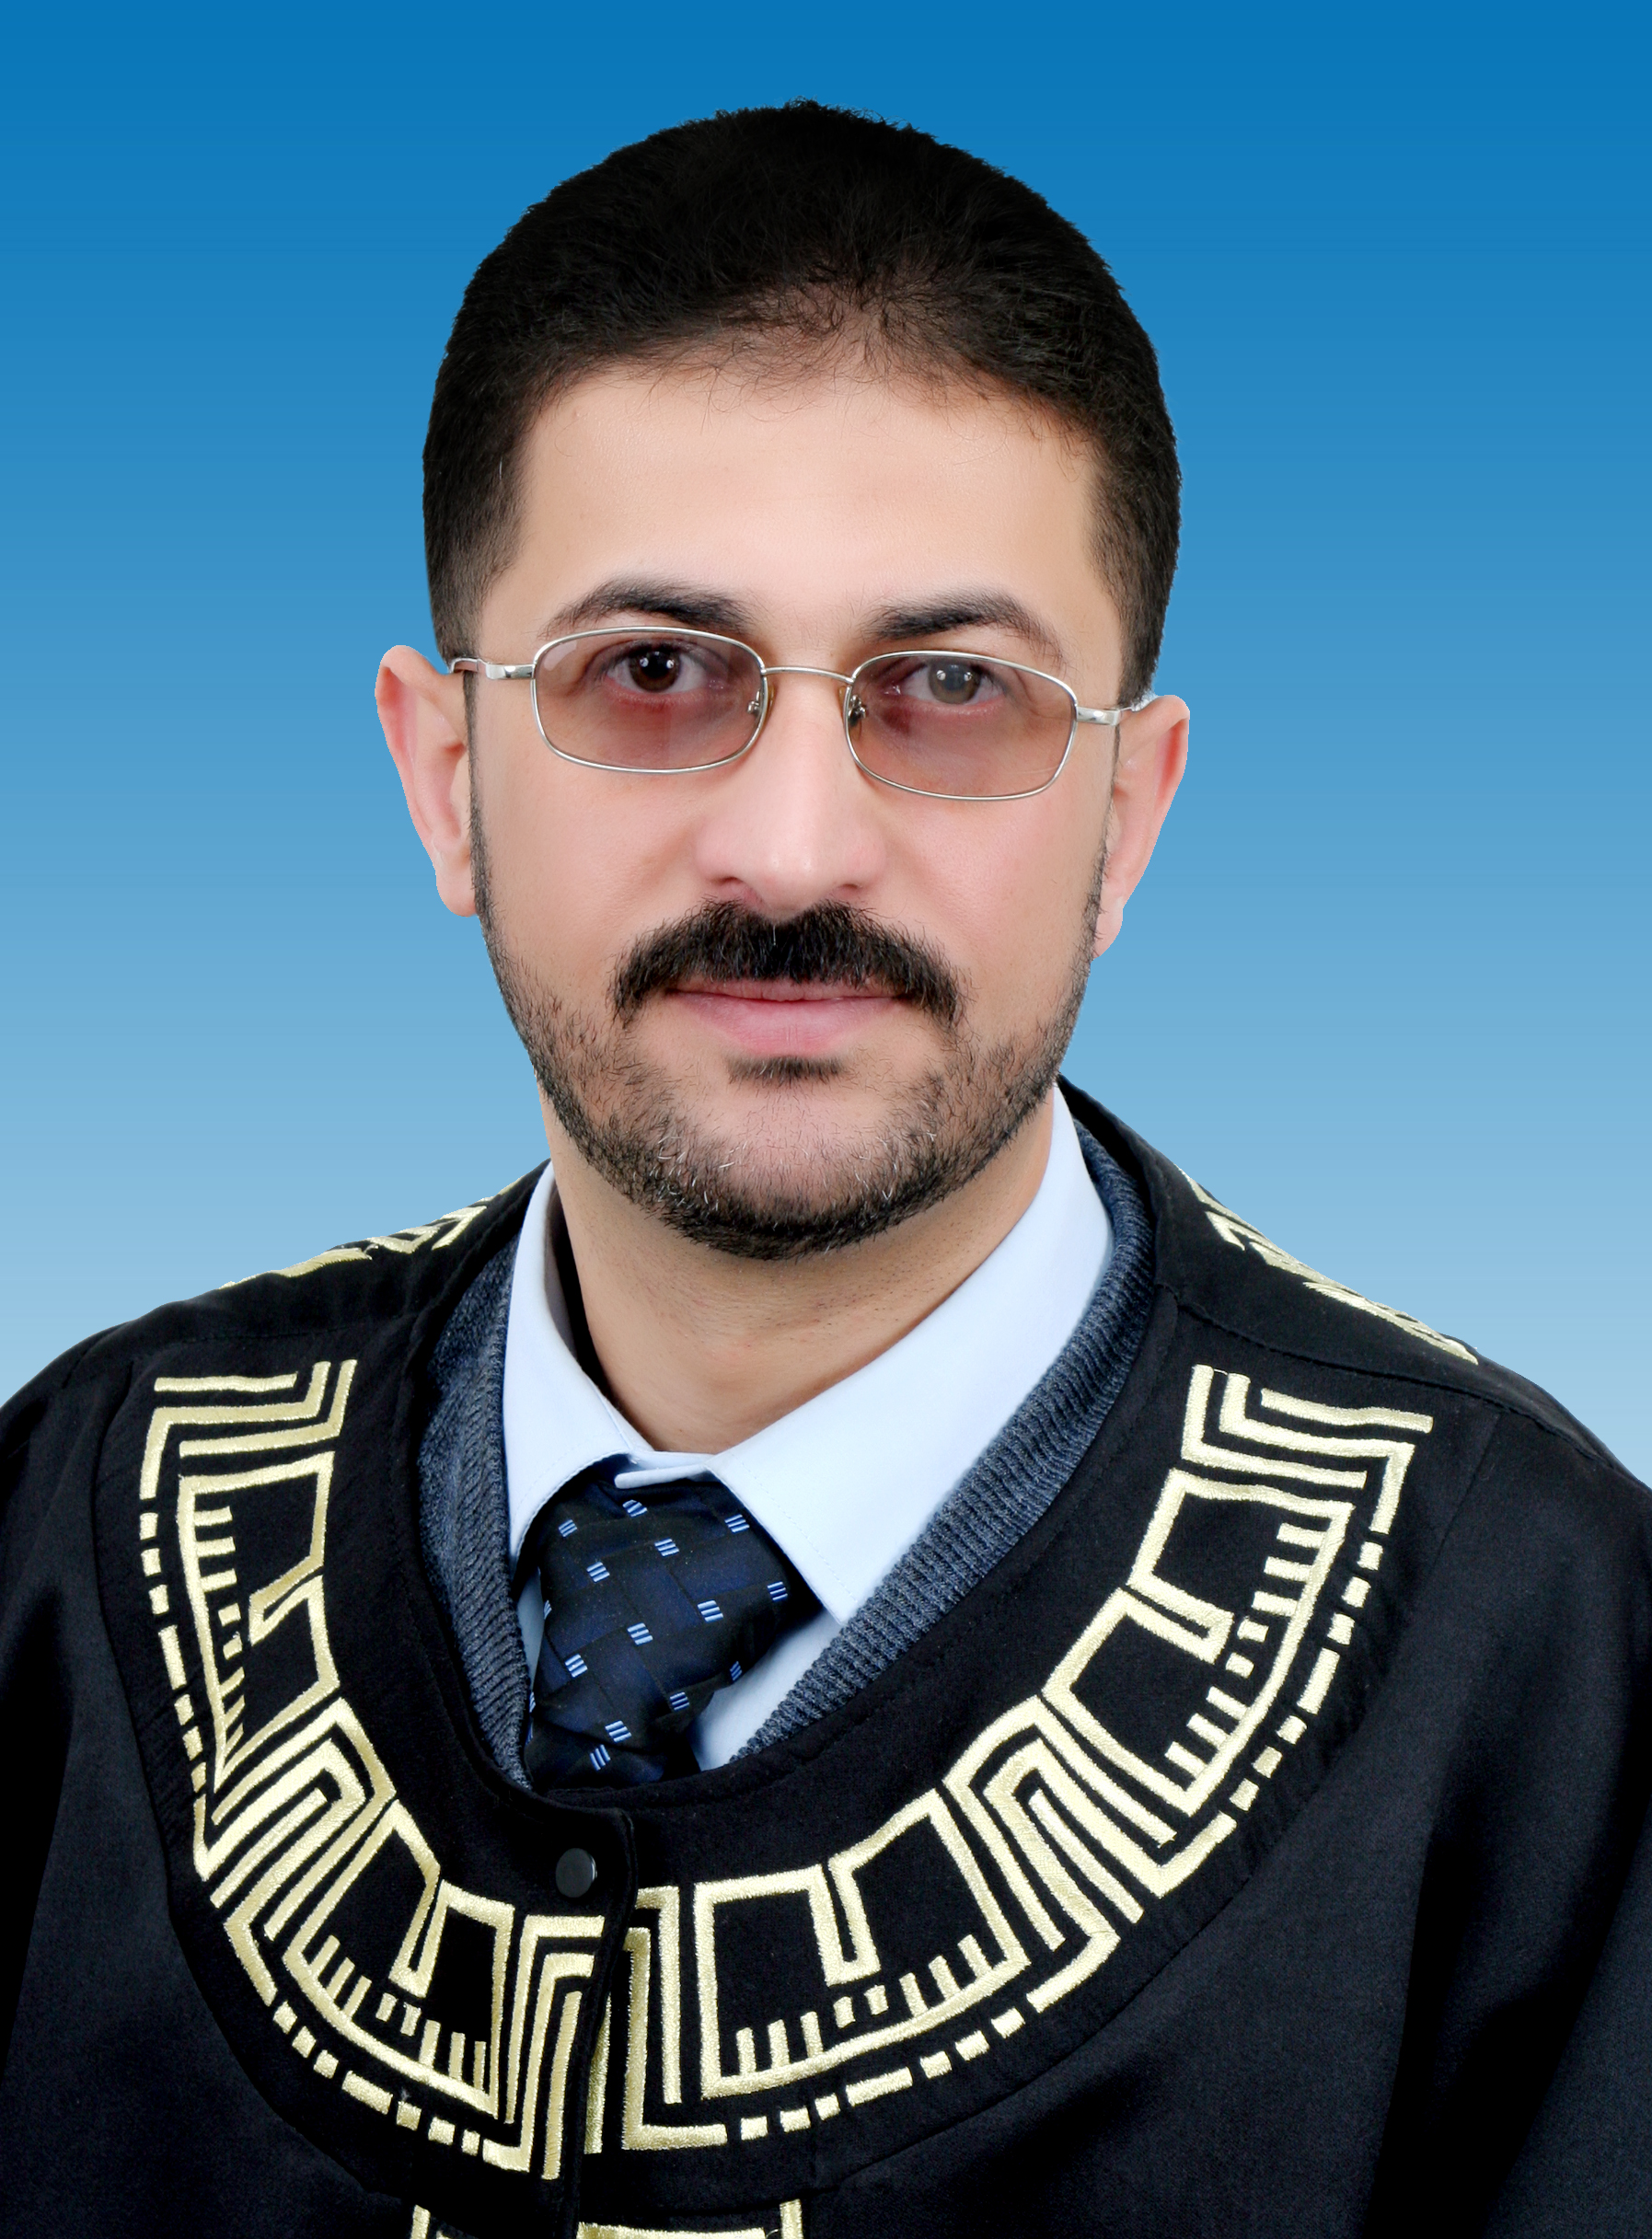 مبارك المنصب الجديد للدكتور عامر ابراهيم العمري